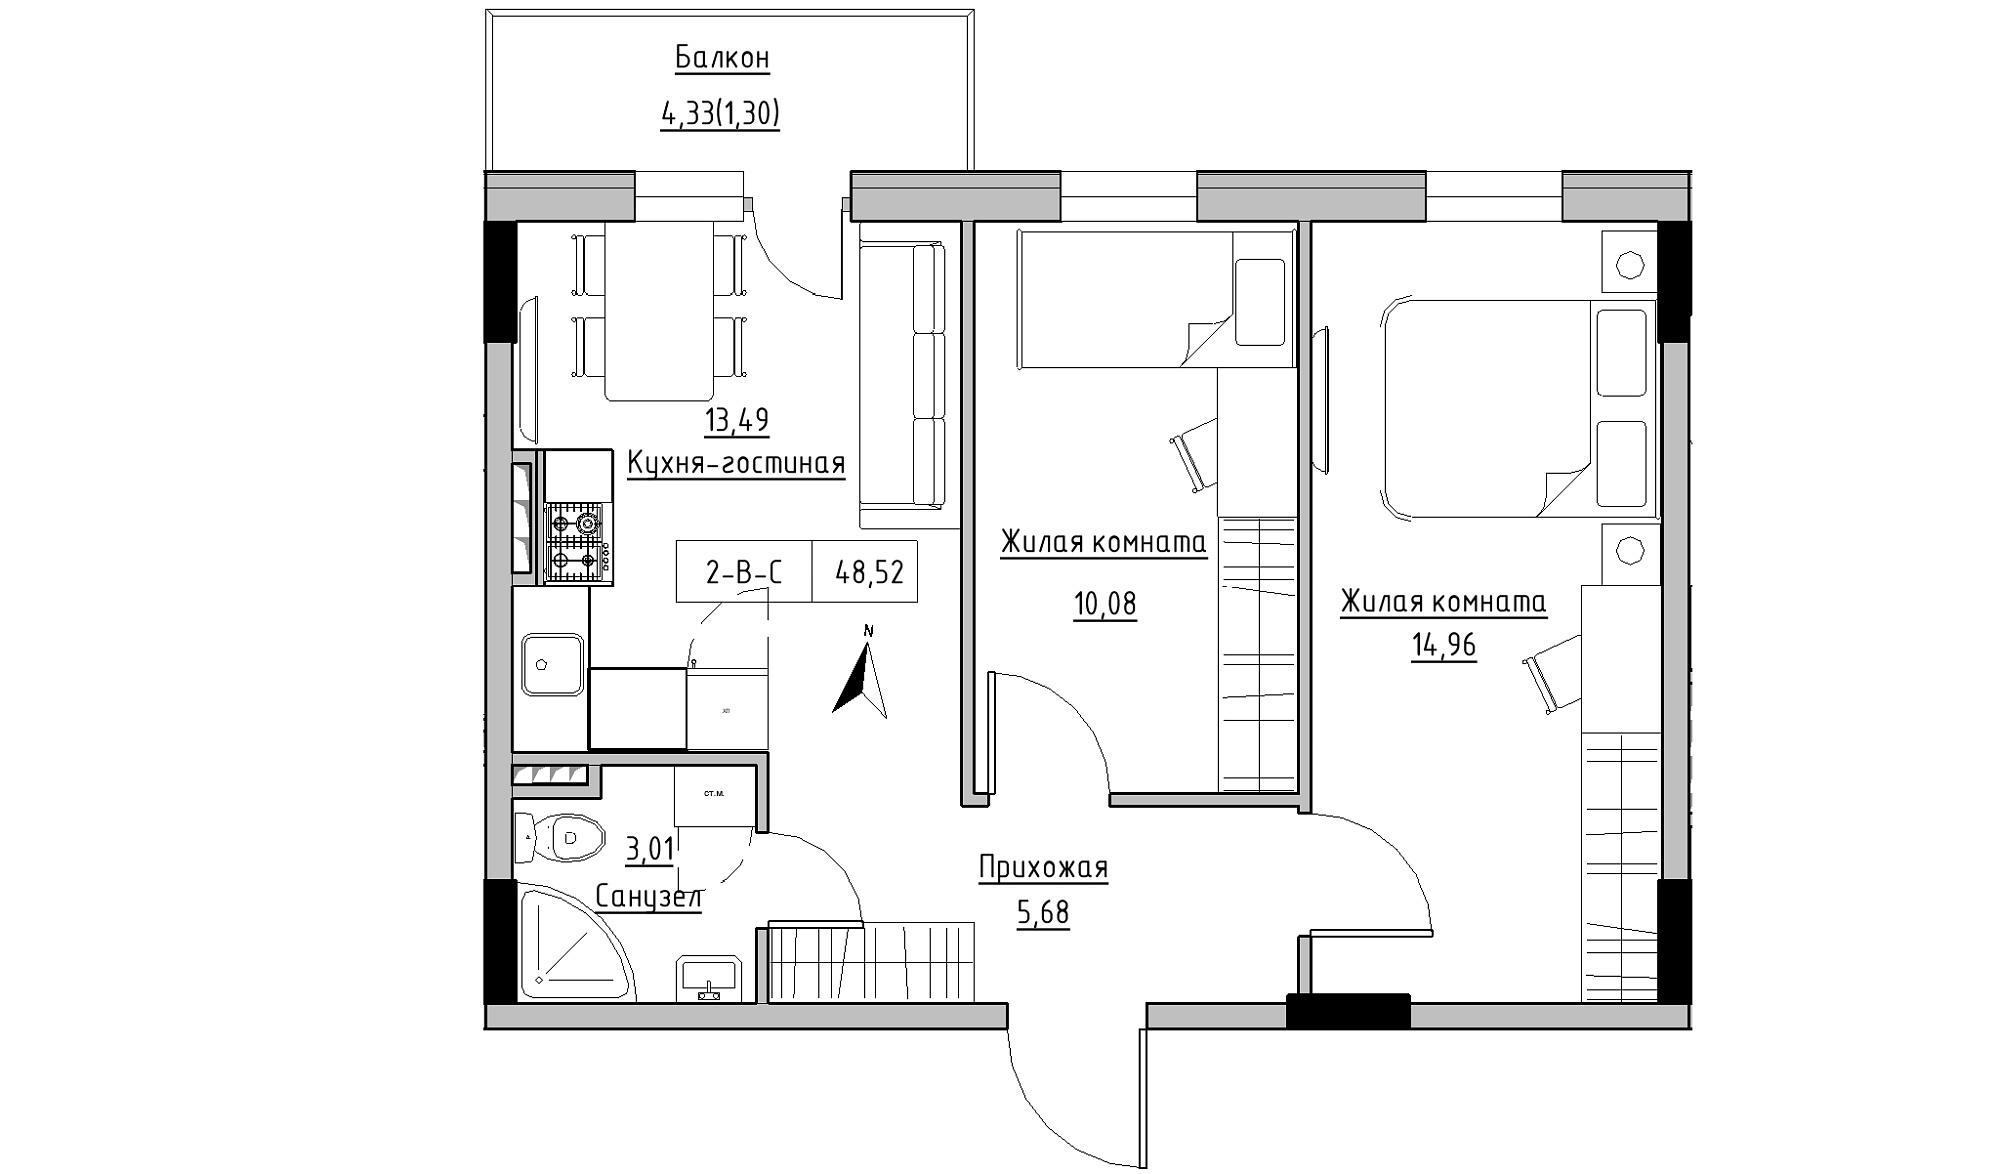 Планировка 2-к квартира площей 48.52м2, KS-025-03/0009.